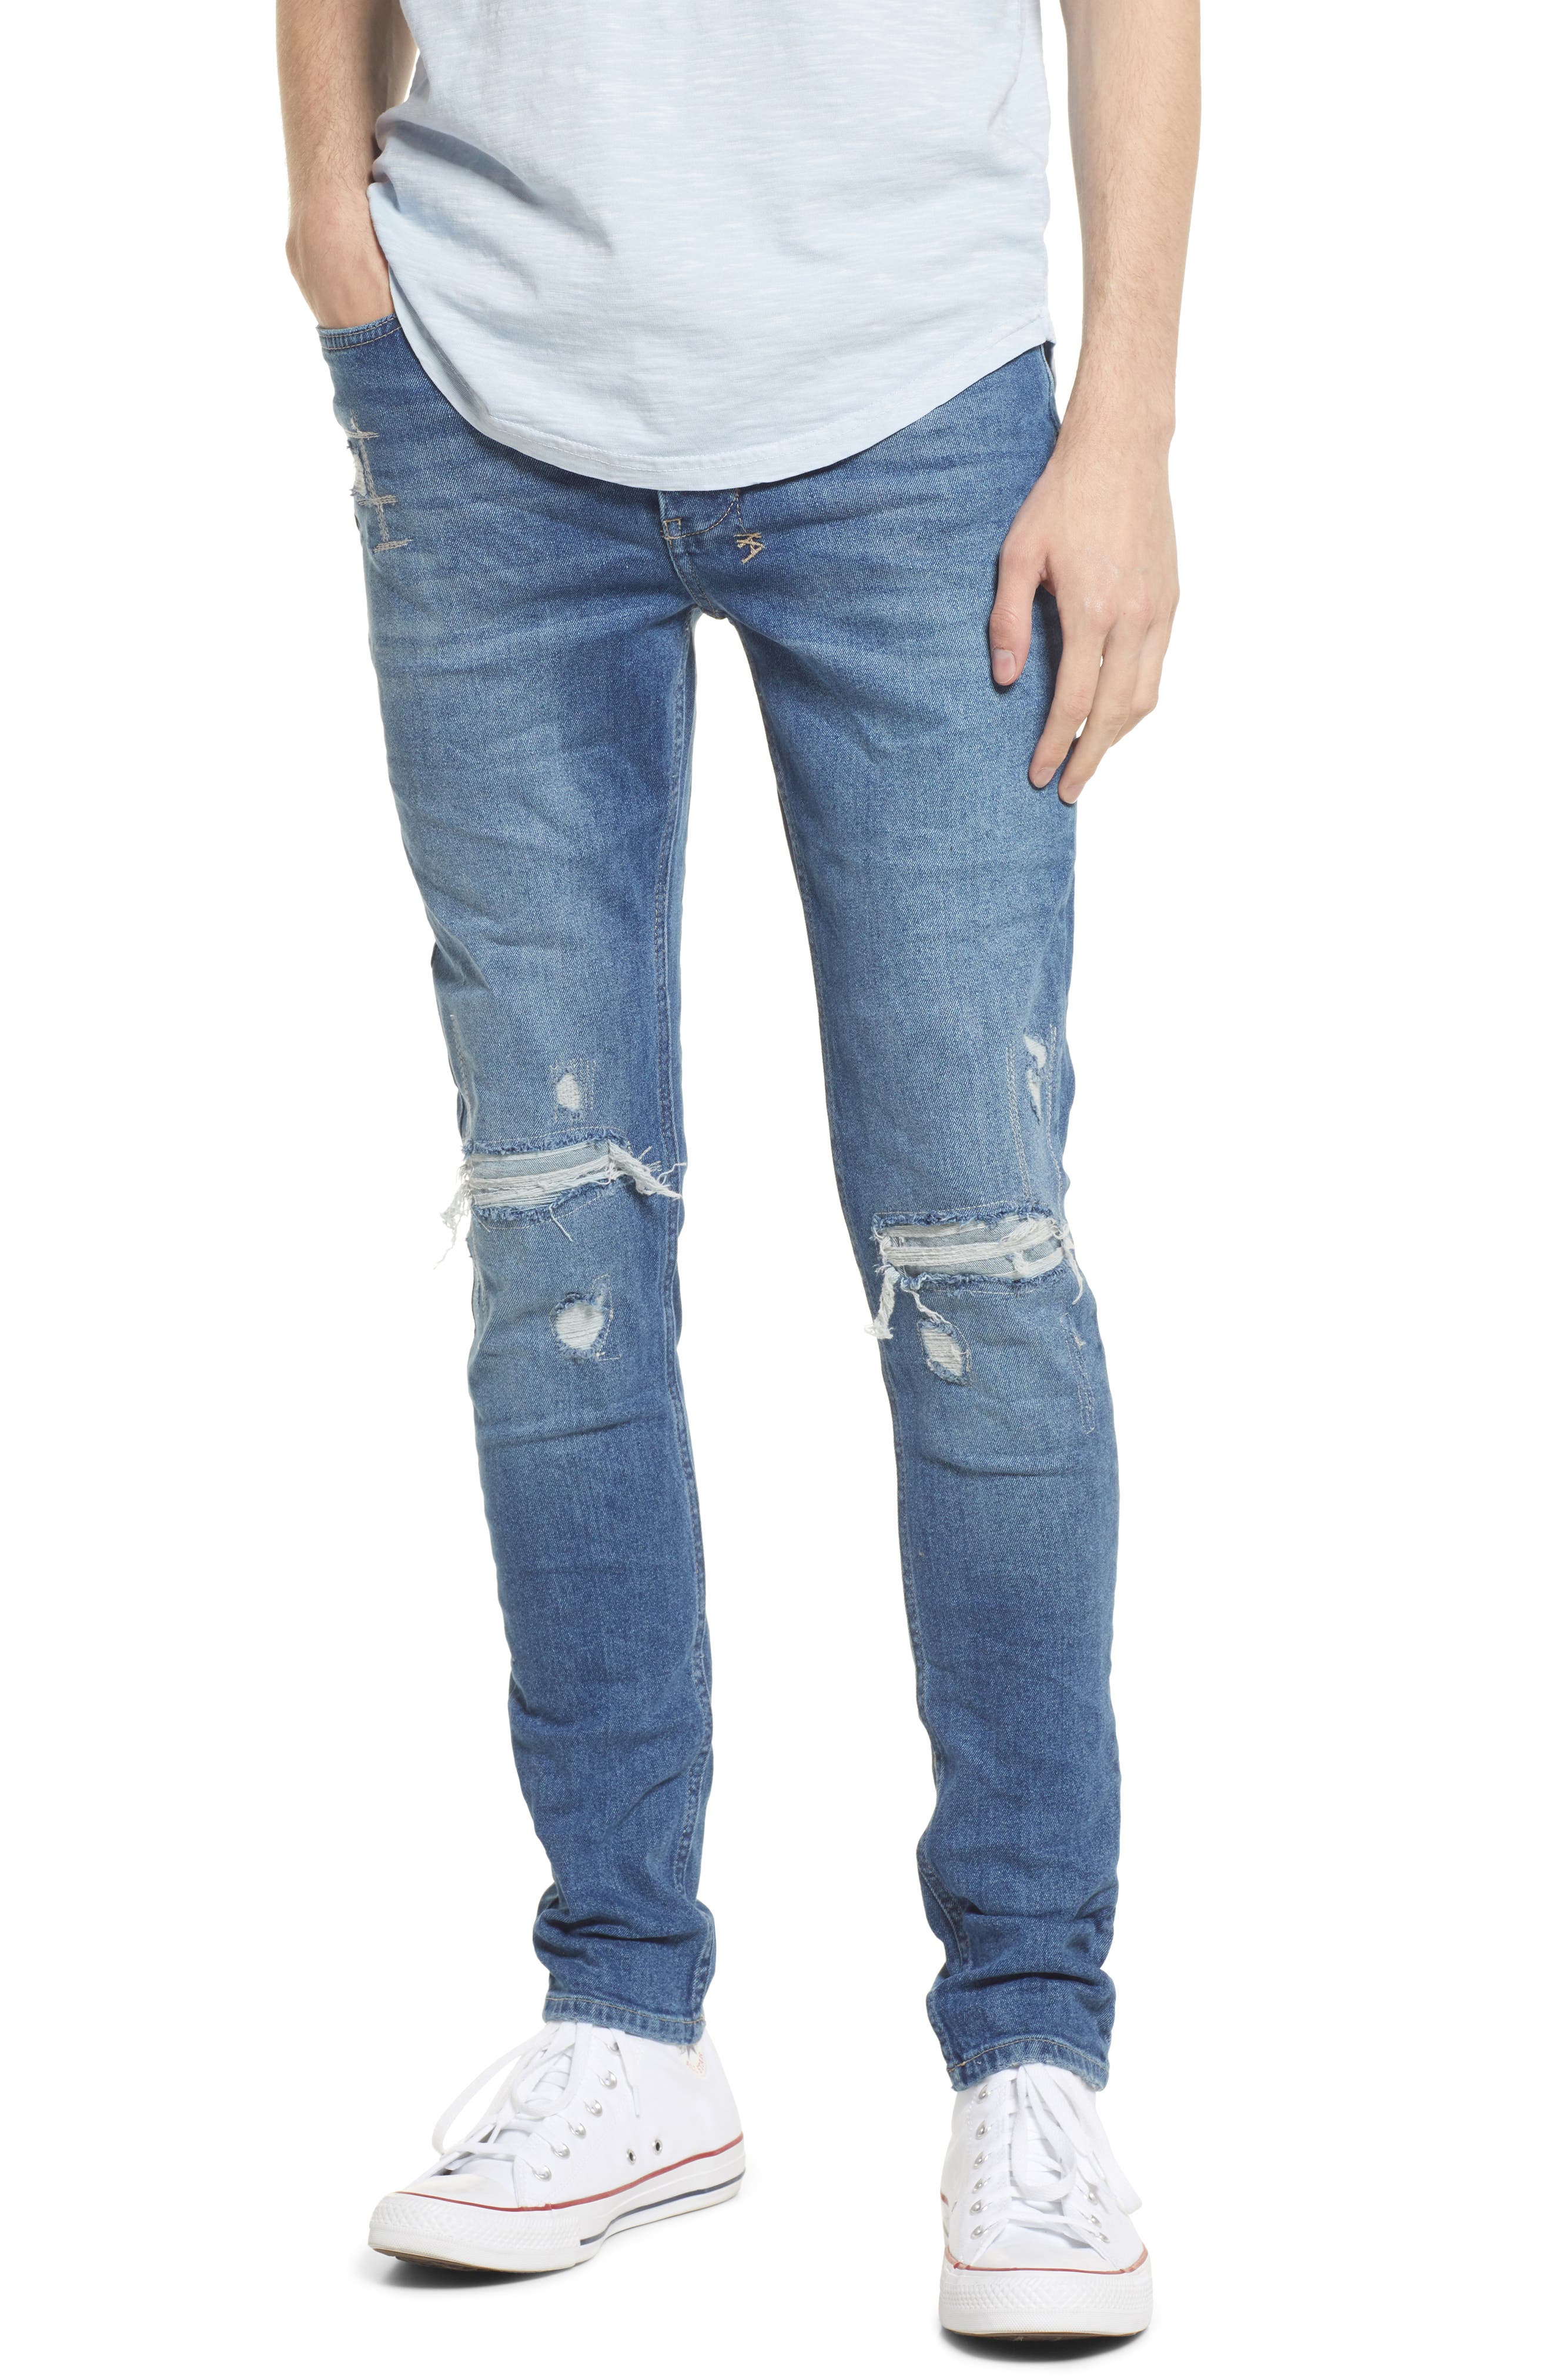 Ksubi Van Winkle Ol Town Trashed Skinny Jeans in Denim at Nordstrom, Size 28